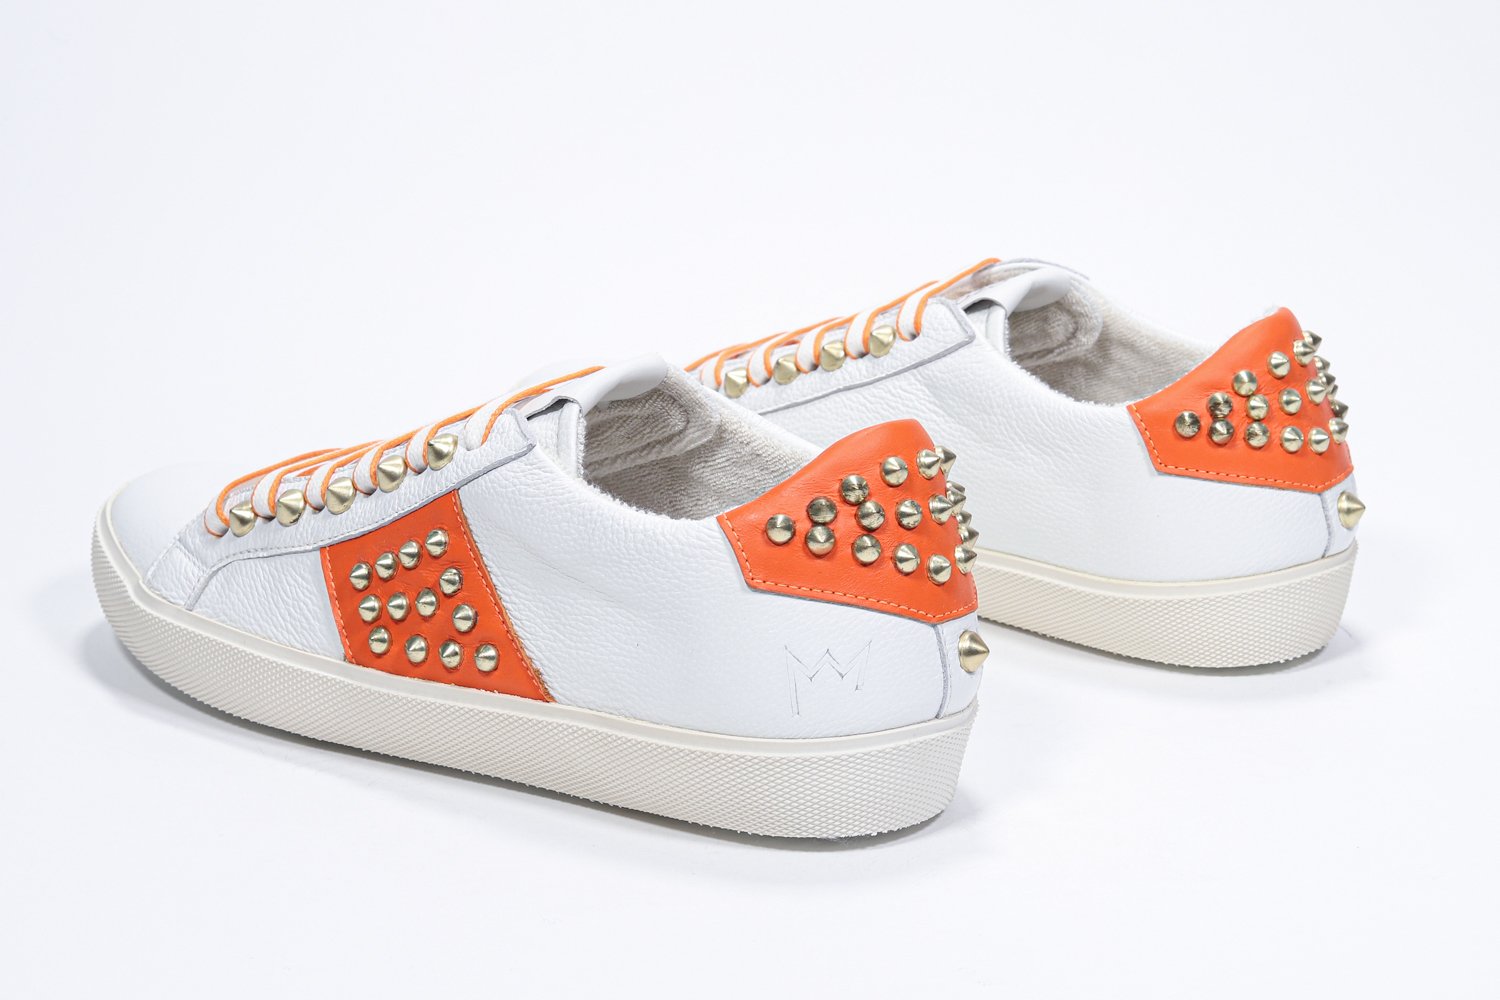 Vue de trois quarts arrière d'un modèle bas blanc et orange sneaker. Tige en cuir avec clous et semelle en caoutchouc vintage.